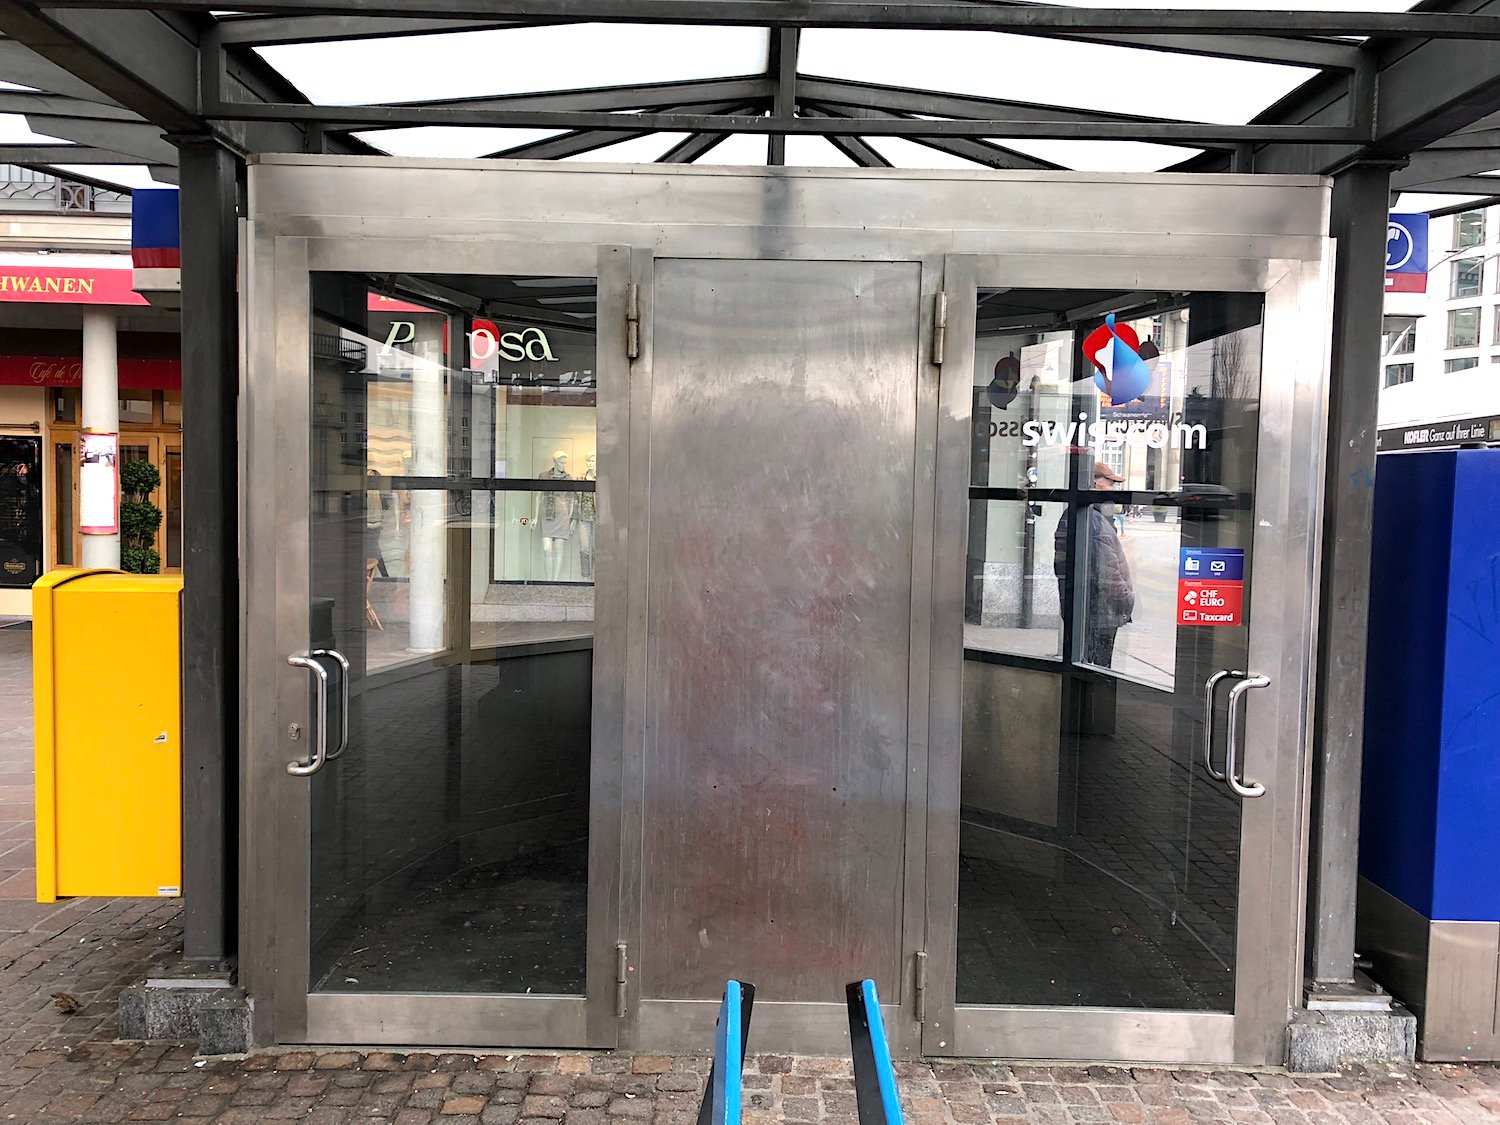 Busstation am Schwanenplatz: Der Raum links ist leer, rechts ist noch ein öffentliches Telefon – aber auch nicht mehr lange.